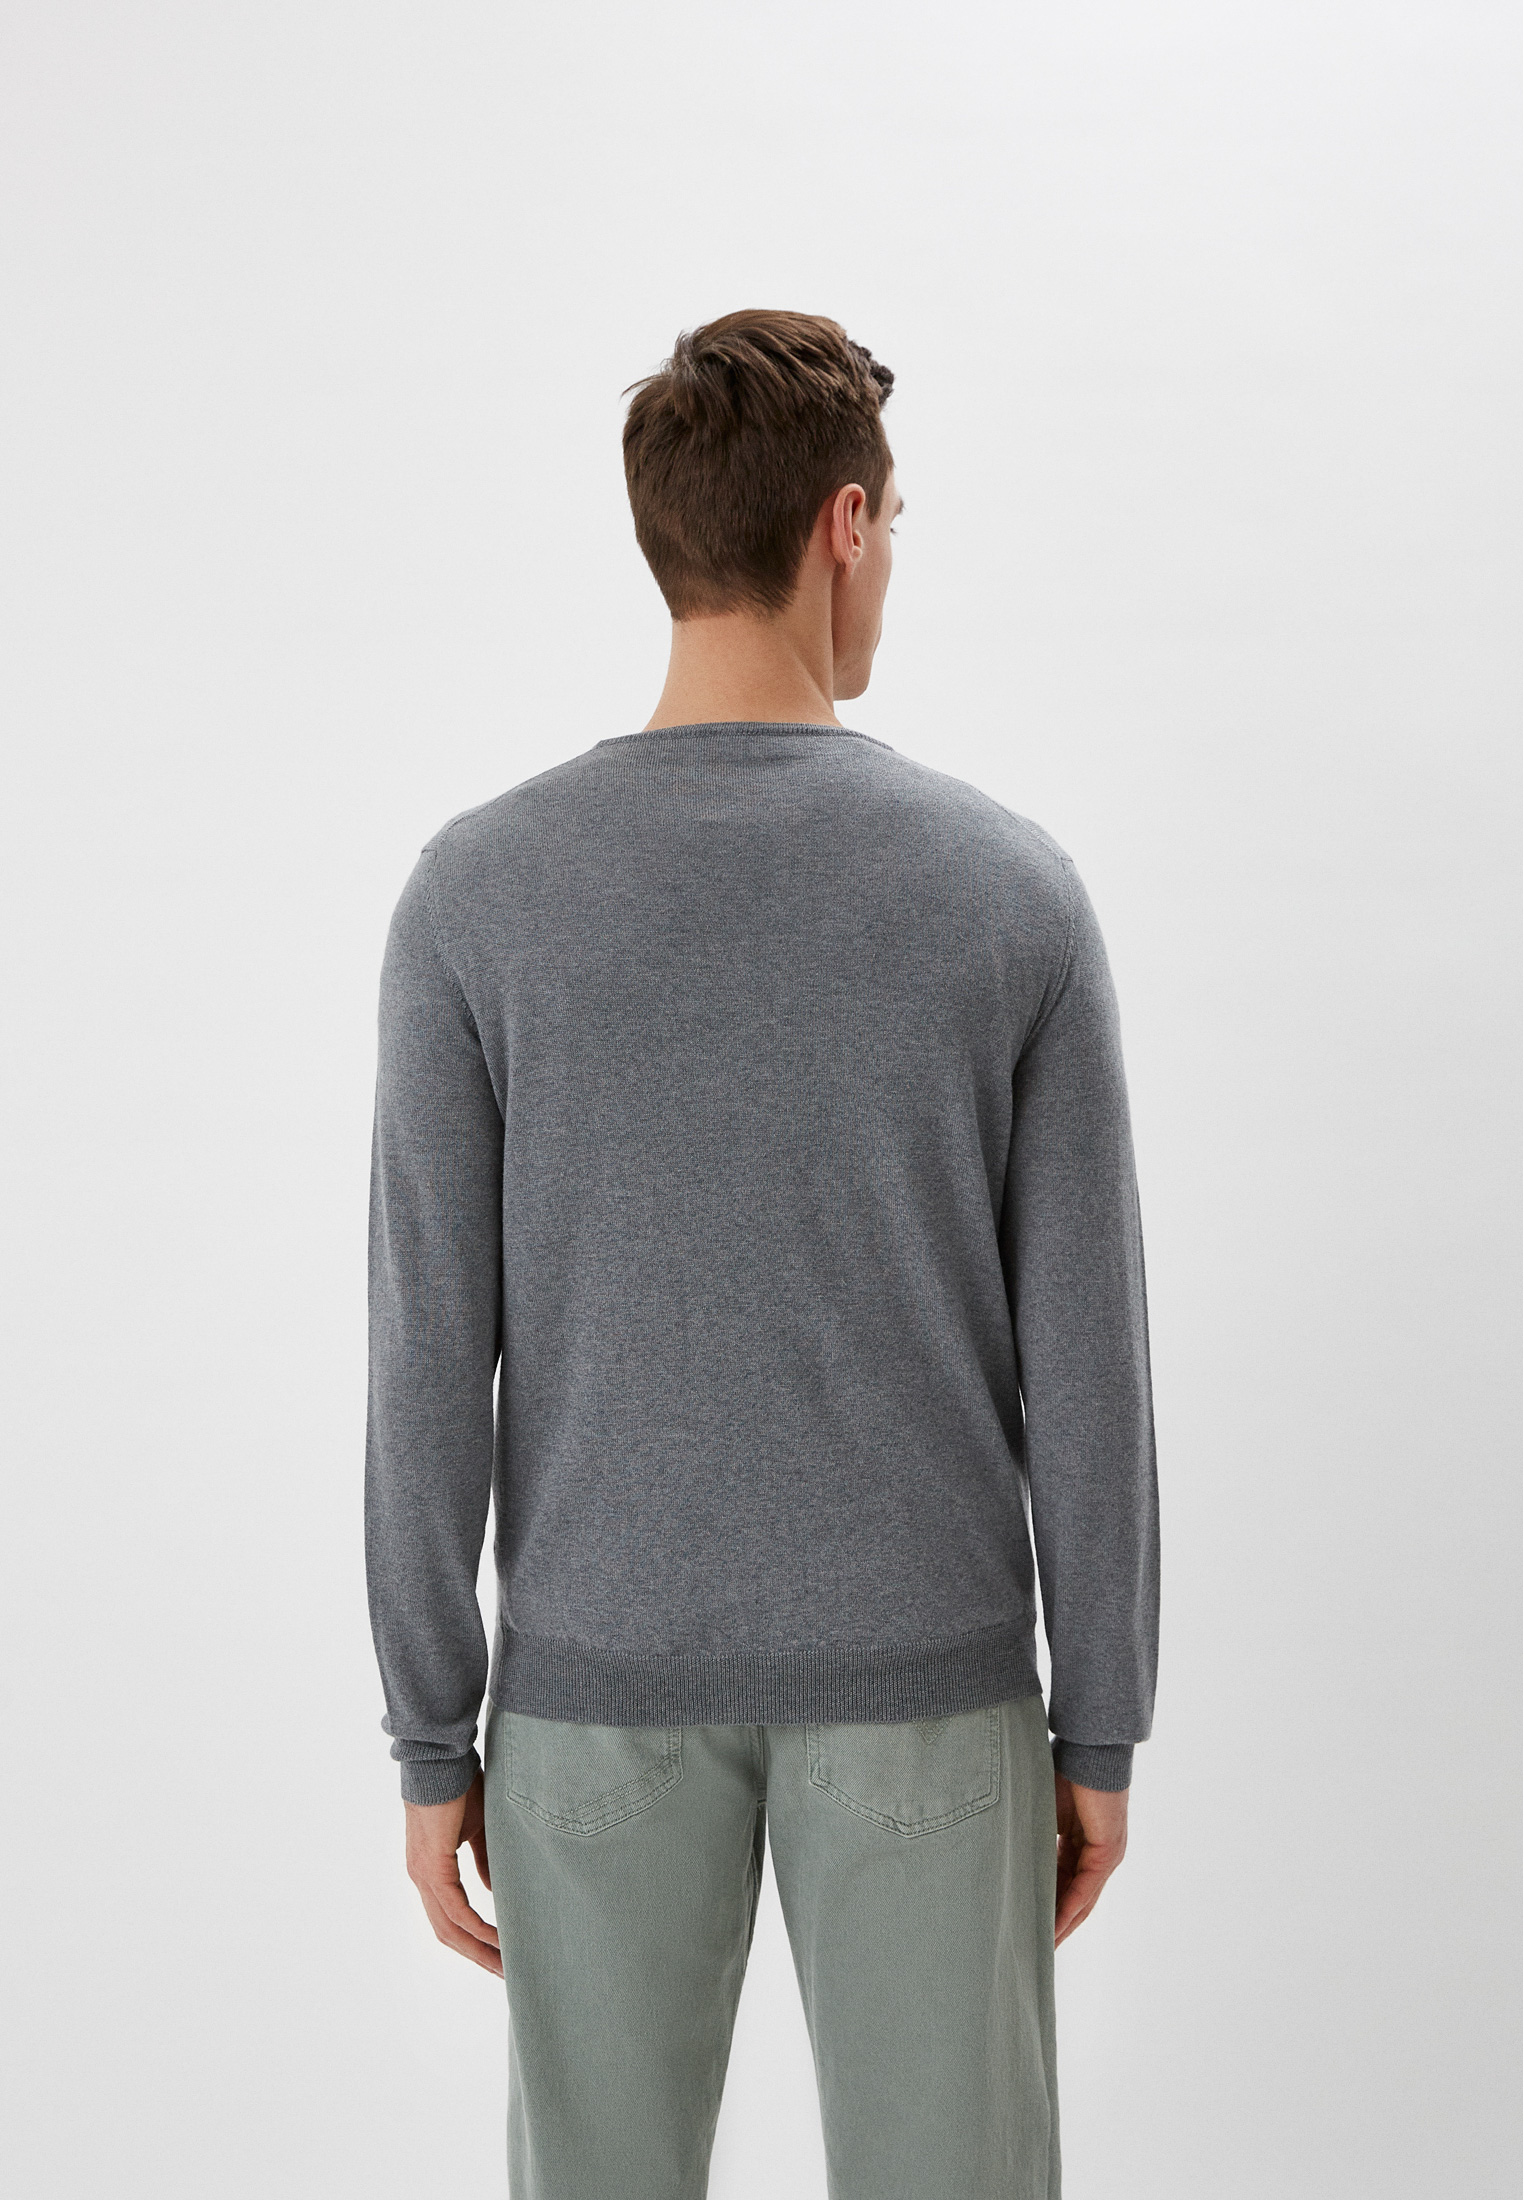 Пуловер Baldinini (Балдинини) MU02: изображение 7